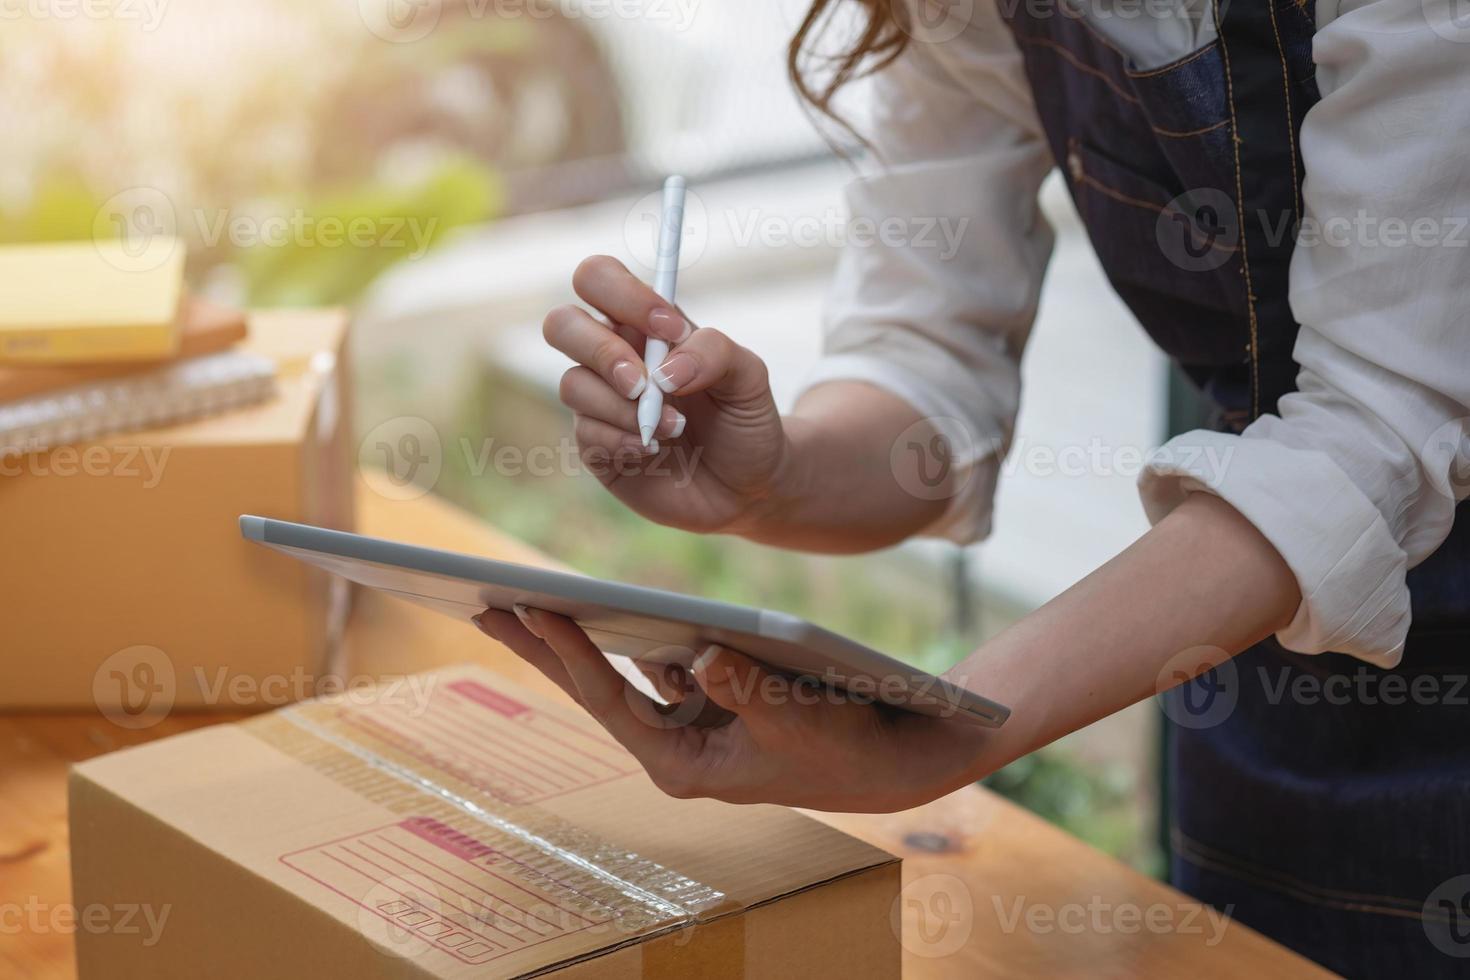 l'imprenditore donna di vendita online riceve ordini e consegna prodotti con scatole ai clienti. concetto di business online per le PMI. foto